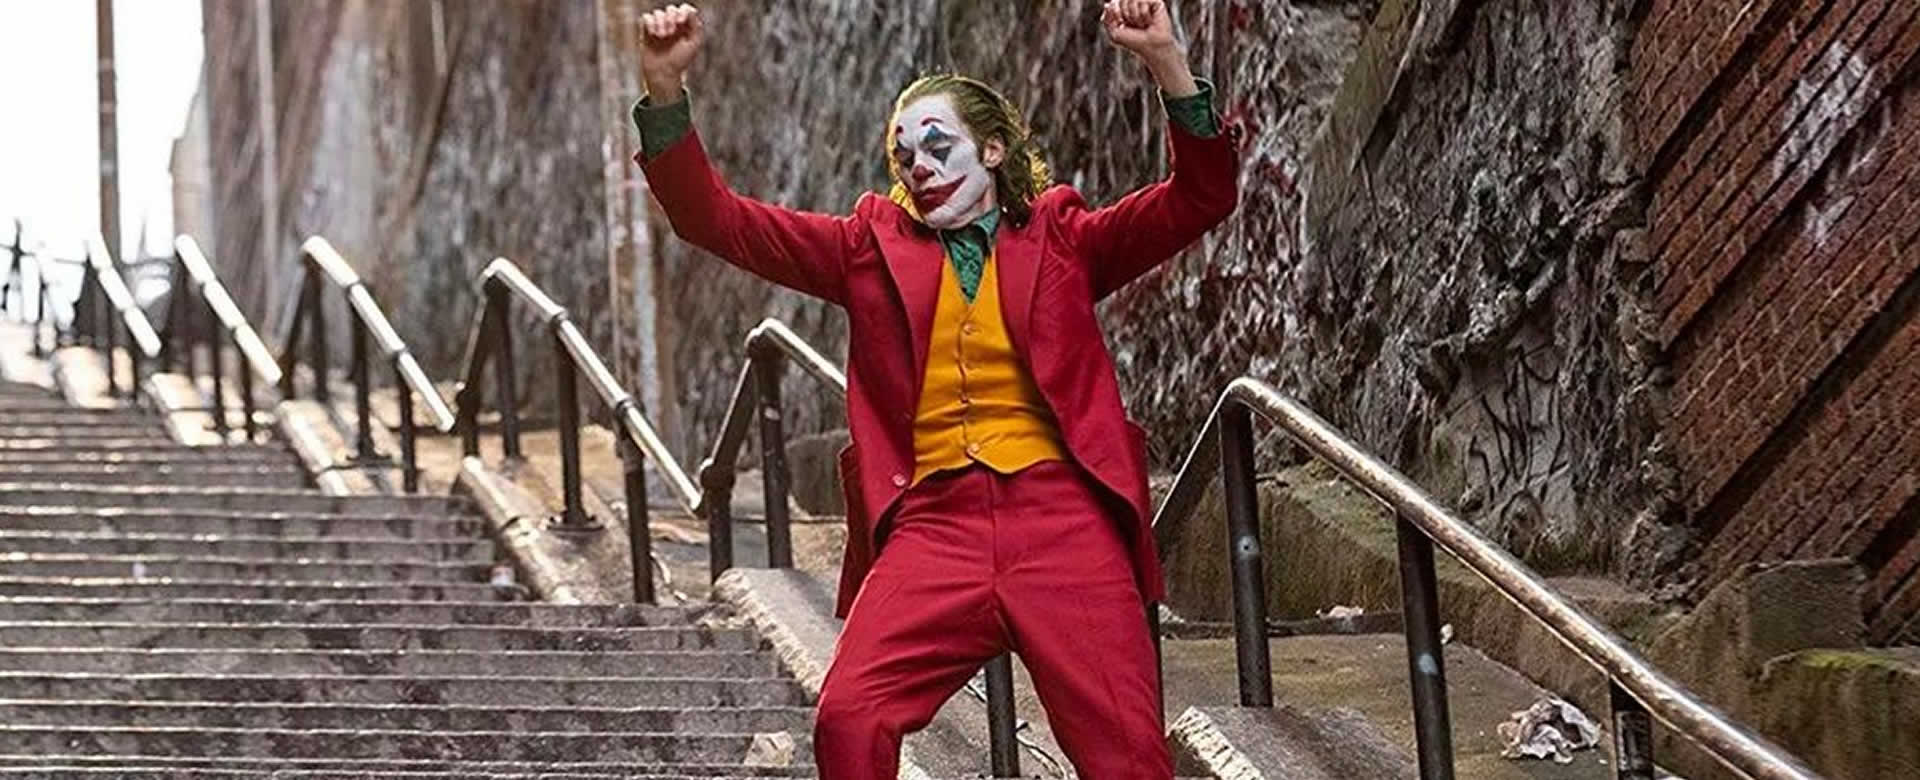 Joker ha superado el récord en taquilla desde su estreno